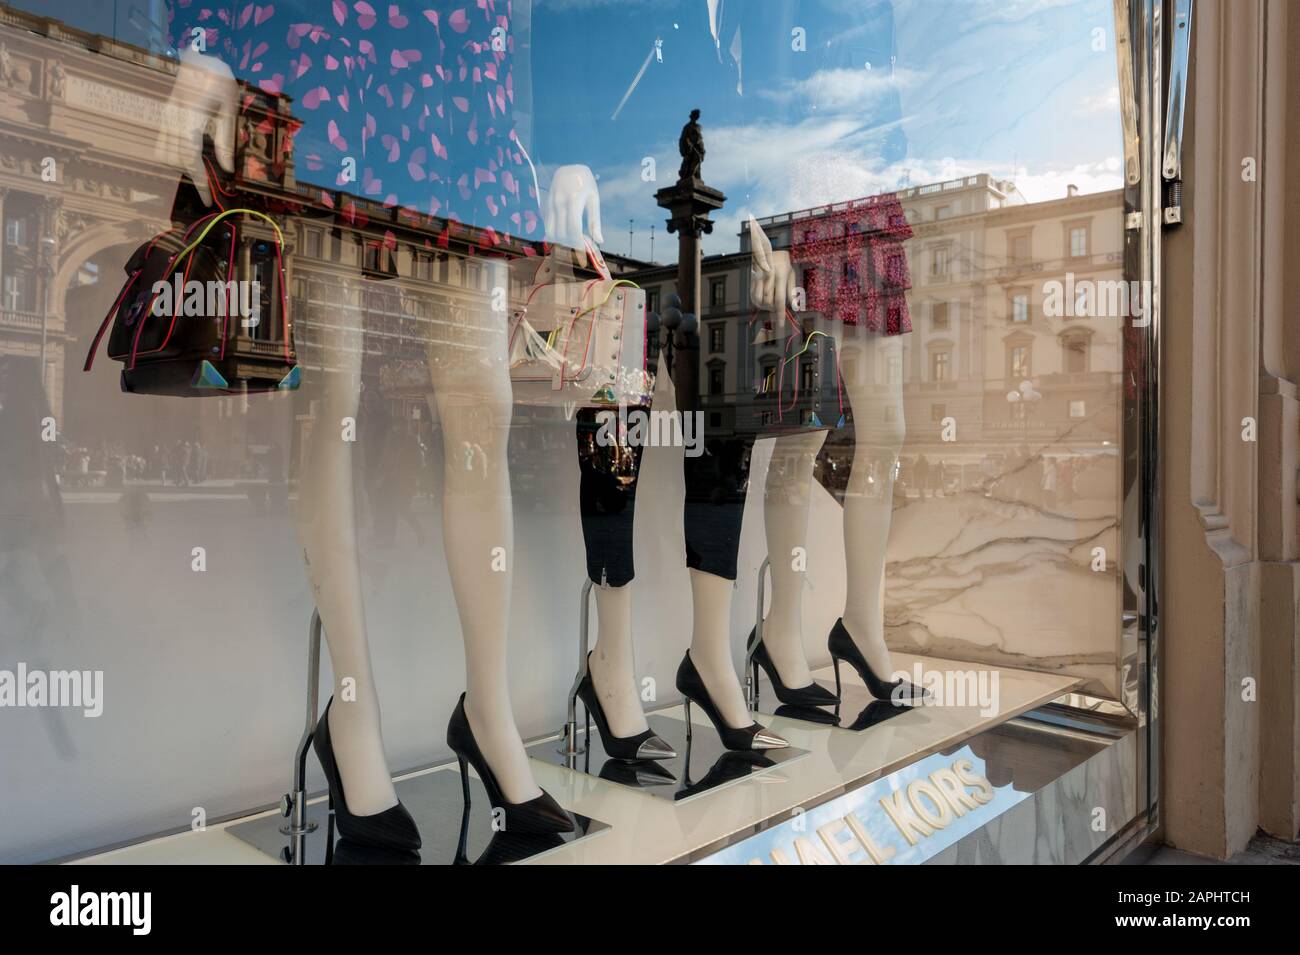 Florence, Italie - 2020, Jan 19: Mannequins avec sacs et talons hauts noirs dans les vitrines de mode Michel Kors. Paysage urbain reflété dans la fenêtre. Banque D'Images